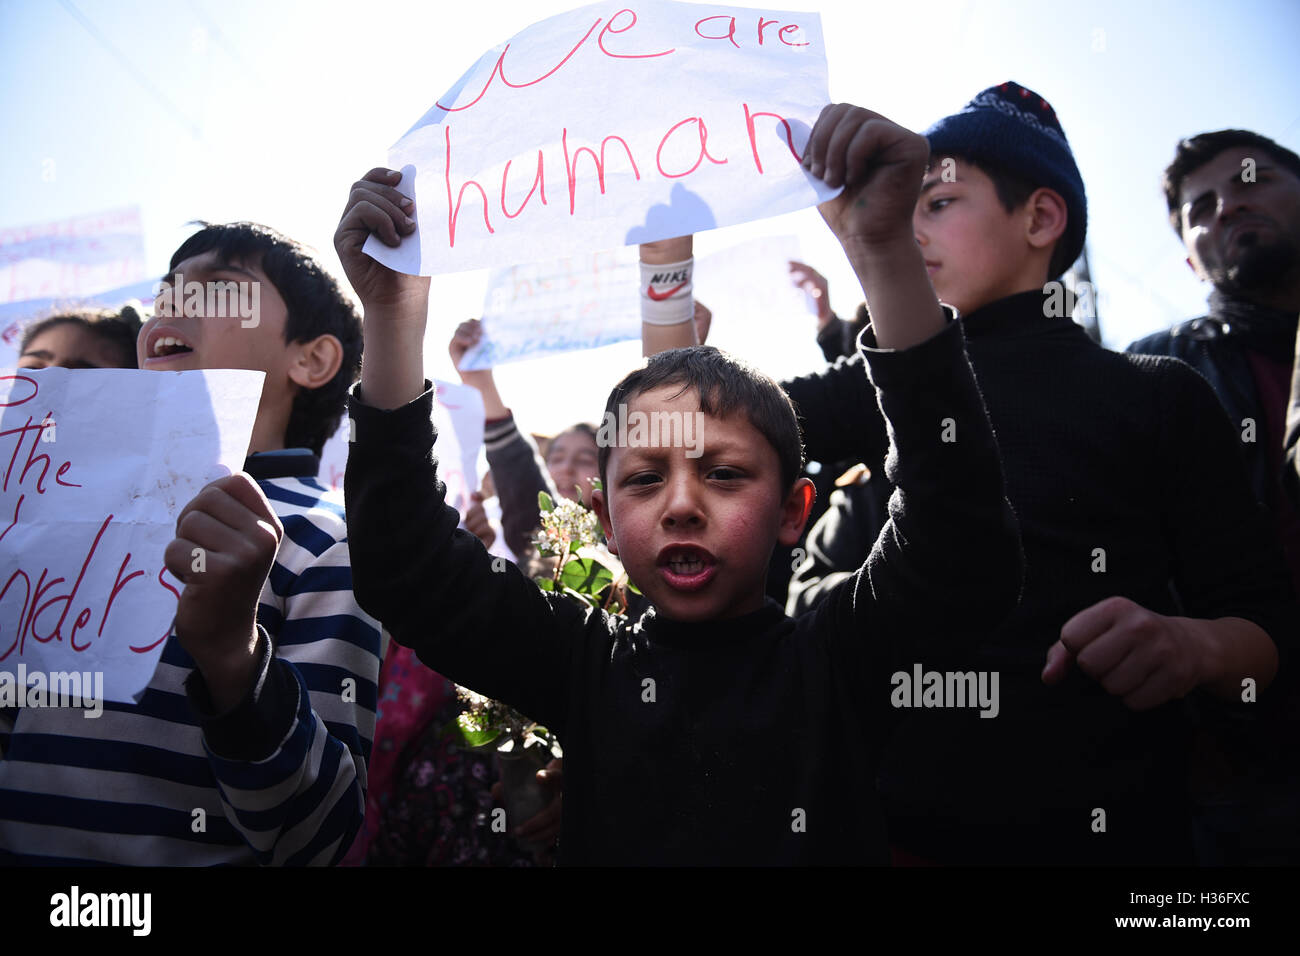 I bambini gridare slogan, come rifugiati e migranti dimostrare esigente per le frontiere dell'Unione europea per aprire, in un campo di rifugiati, a nord del villaggio greco di Idomeni. Migliaia di rifugiati e migranti sono rimasti bloccati per mesi al Greco confine macedone, presso il campo di rifugiati nei pressi del villaggio di Idomeni, fino a quando il governo greco ha deciso di evacuare l'area. Foto Stock